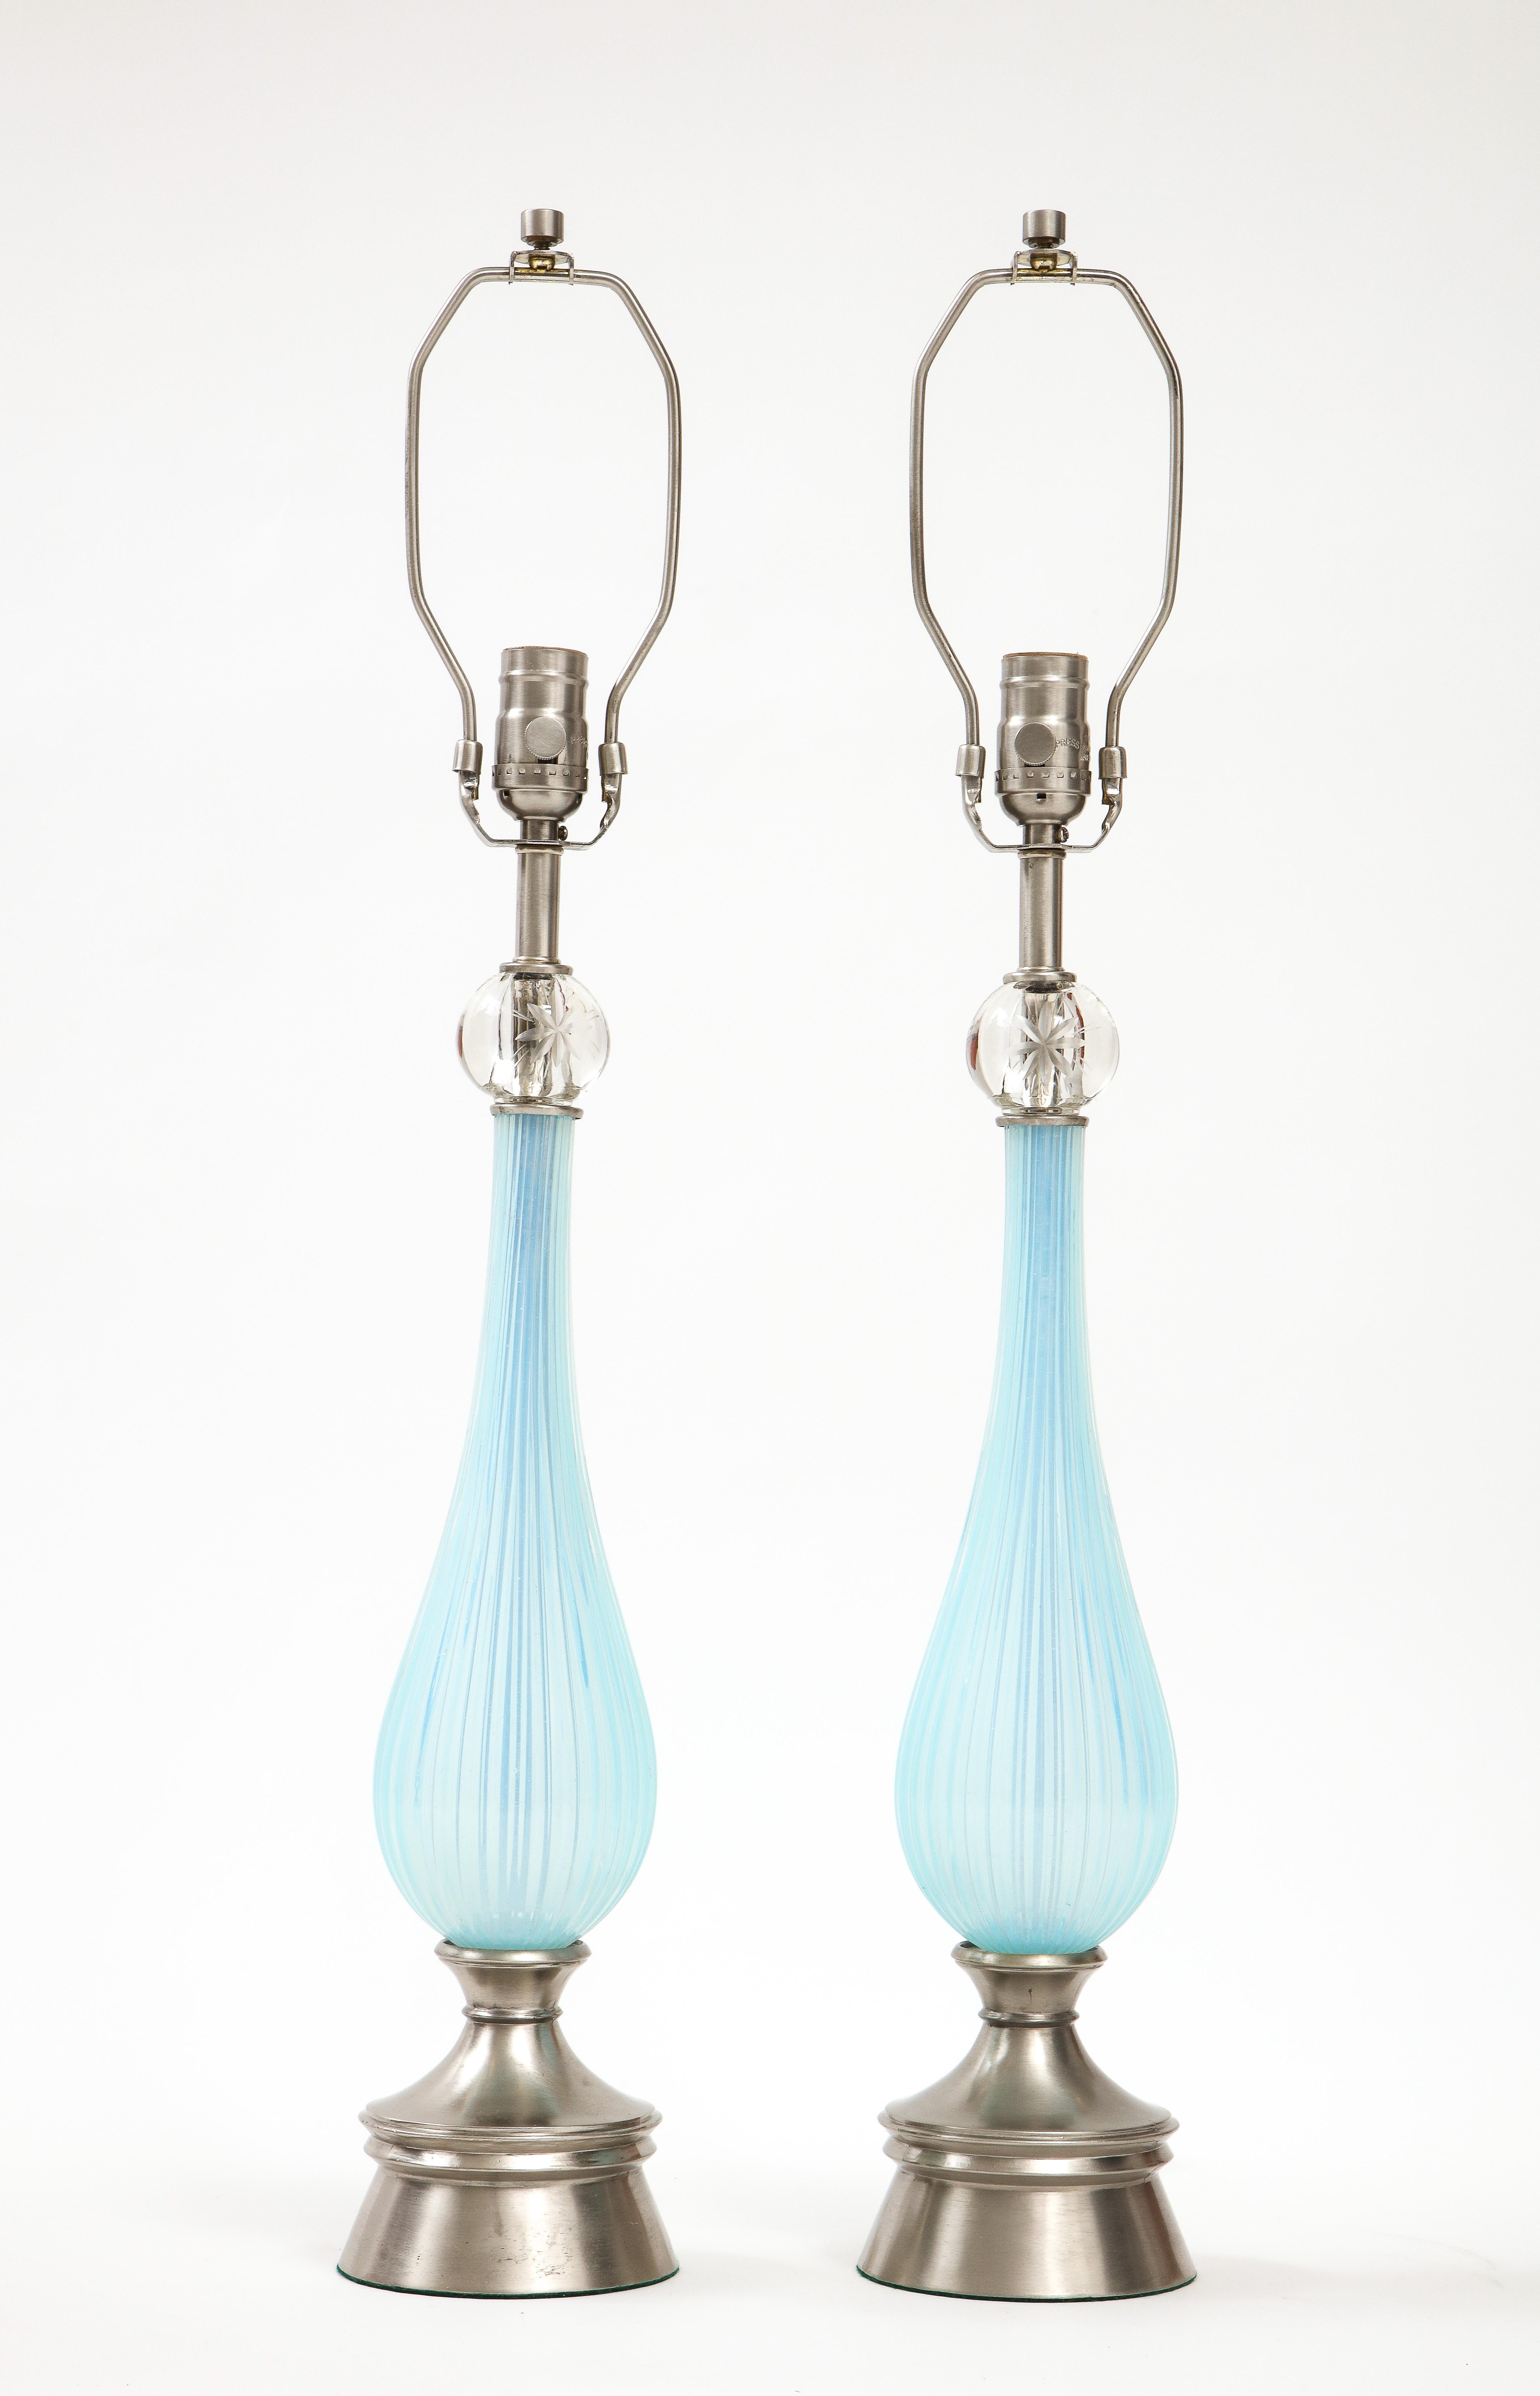 Ein Paar Lampen aus Muranoglas aus der Mitte des Jahrhunderts in einer lila/violette Farbe. Die Glaskörper haben ein kanneliertes Design, das von einer Glaskugel mit einem geätzten Sternelement gekrönt wird. Die Lampen stehen auf einem gedrechselten